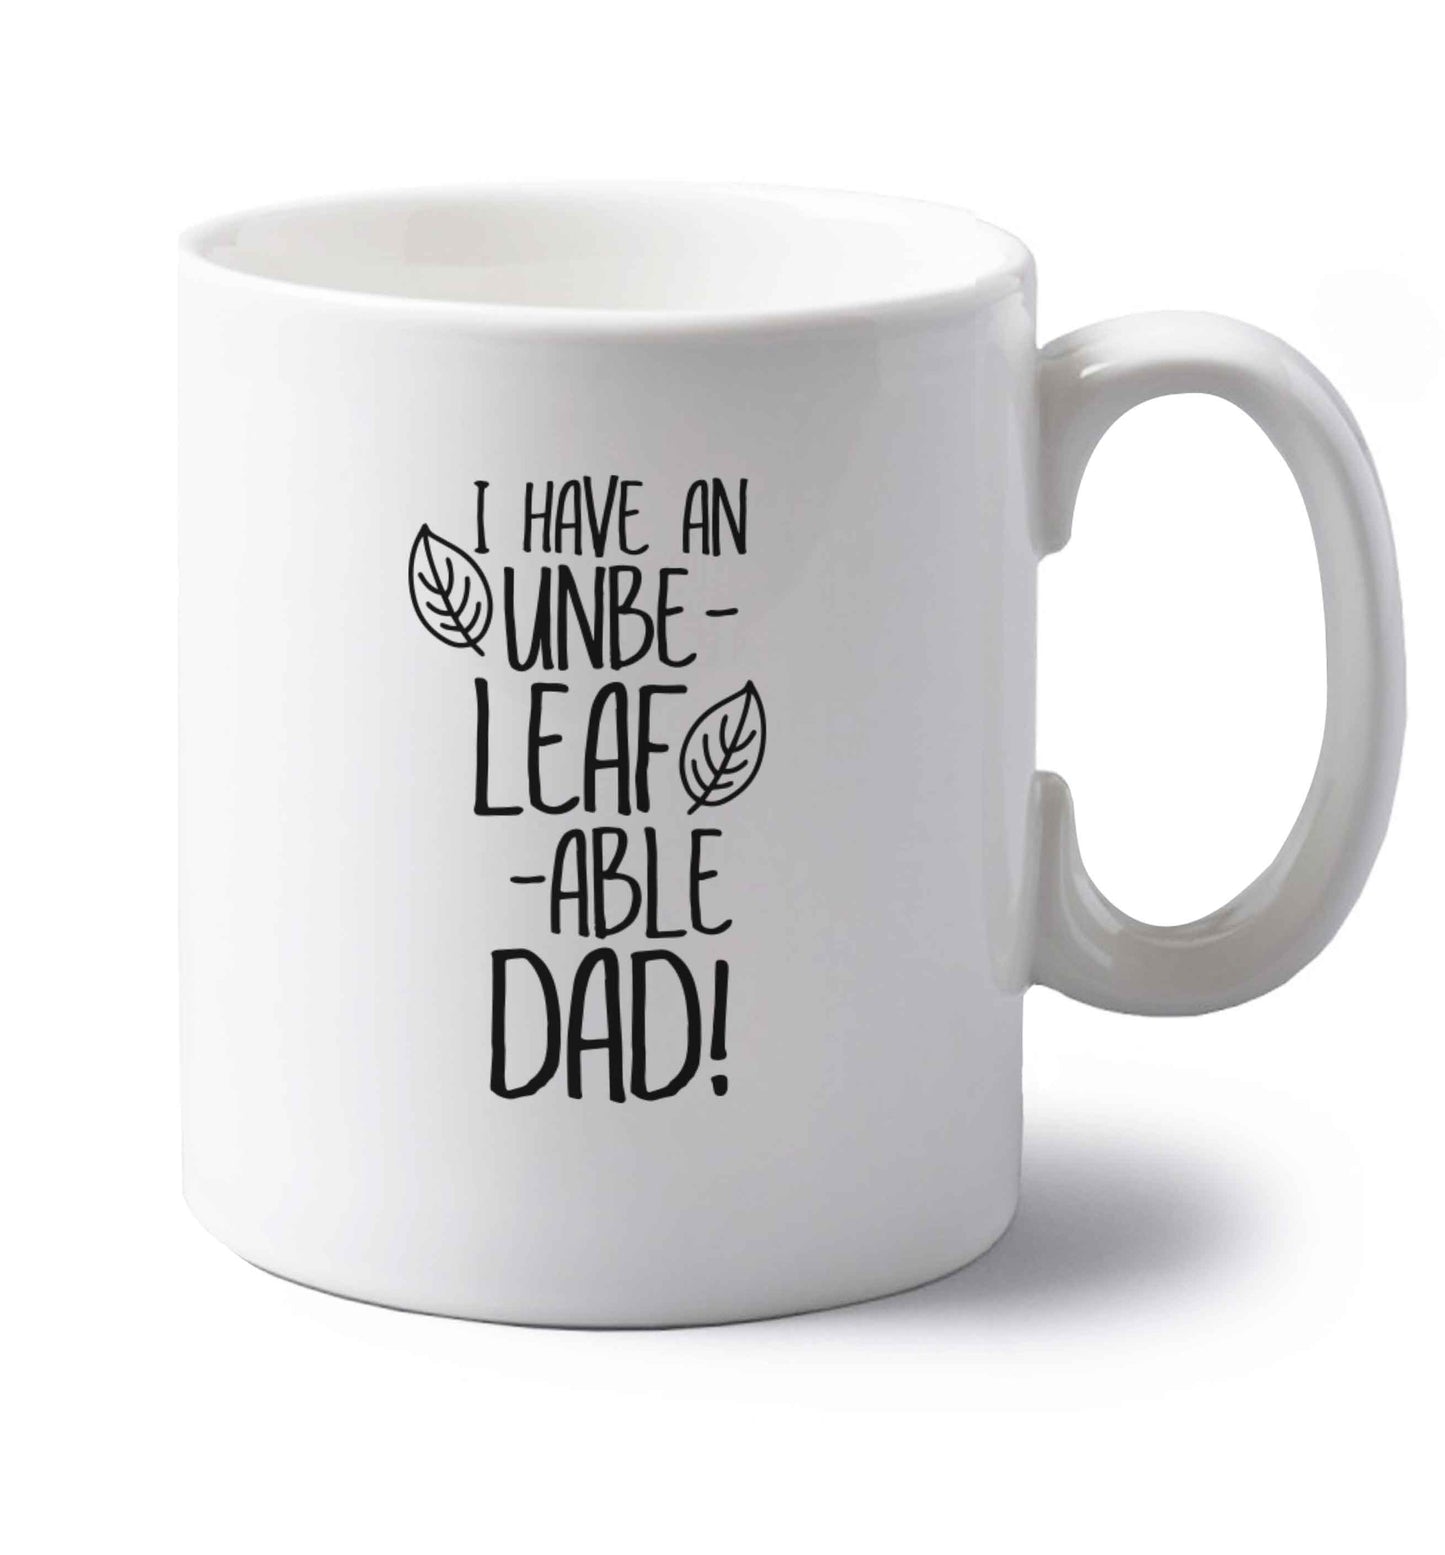 I have an unbe-leaf-able dad left handed white ceramic mug 